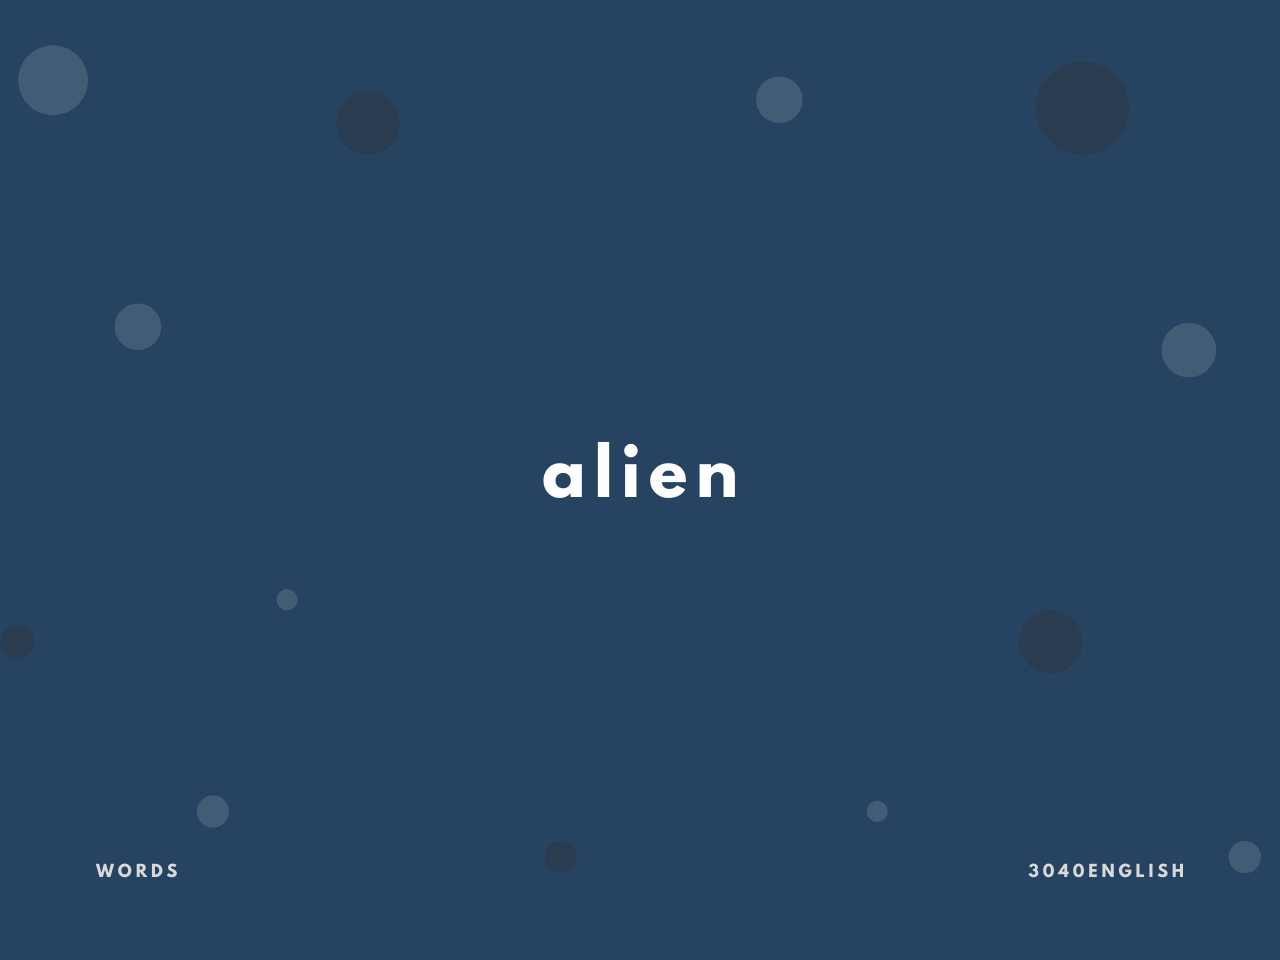 エイリアン Alien の意味と簡単な使い方 英語表現 例文あり